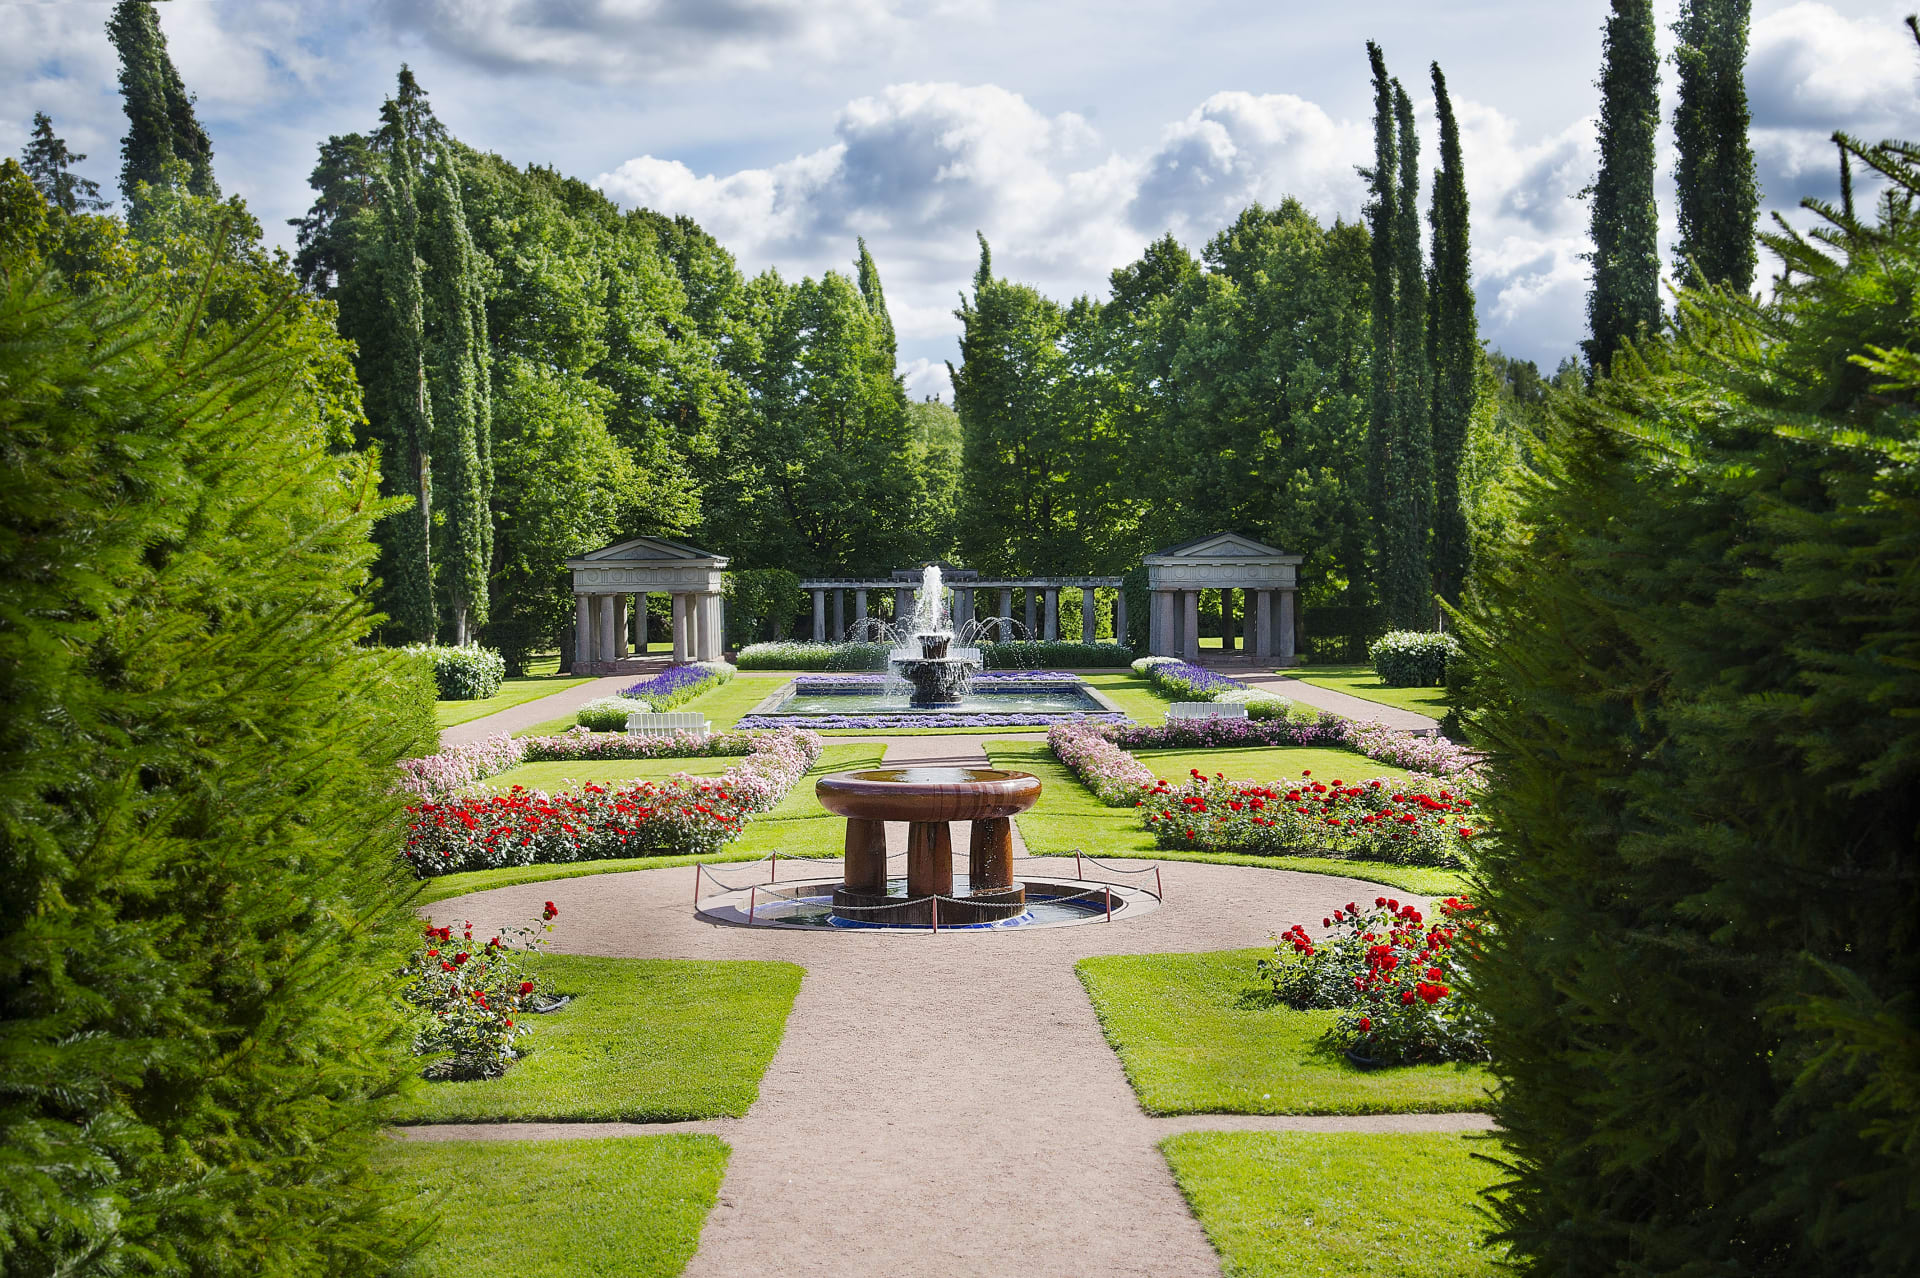 Kultaranta garden